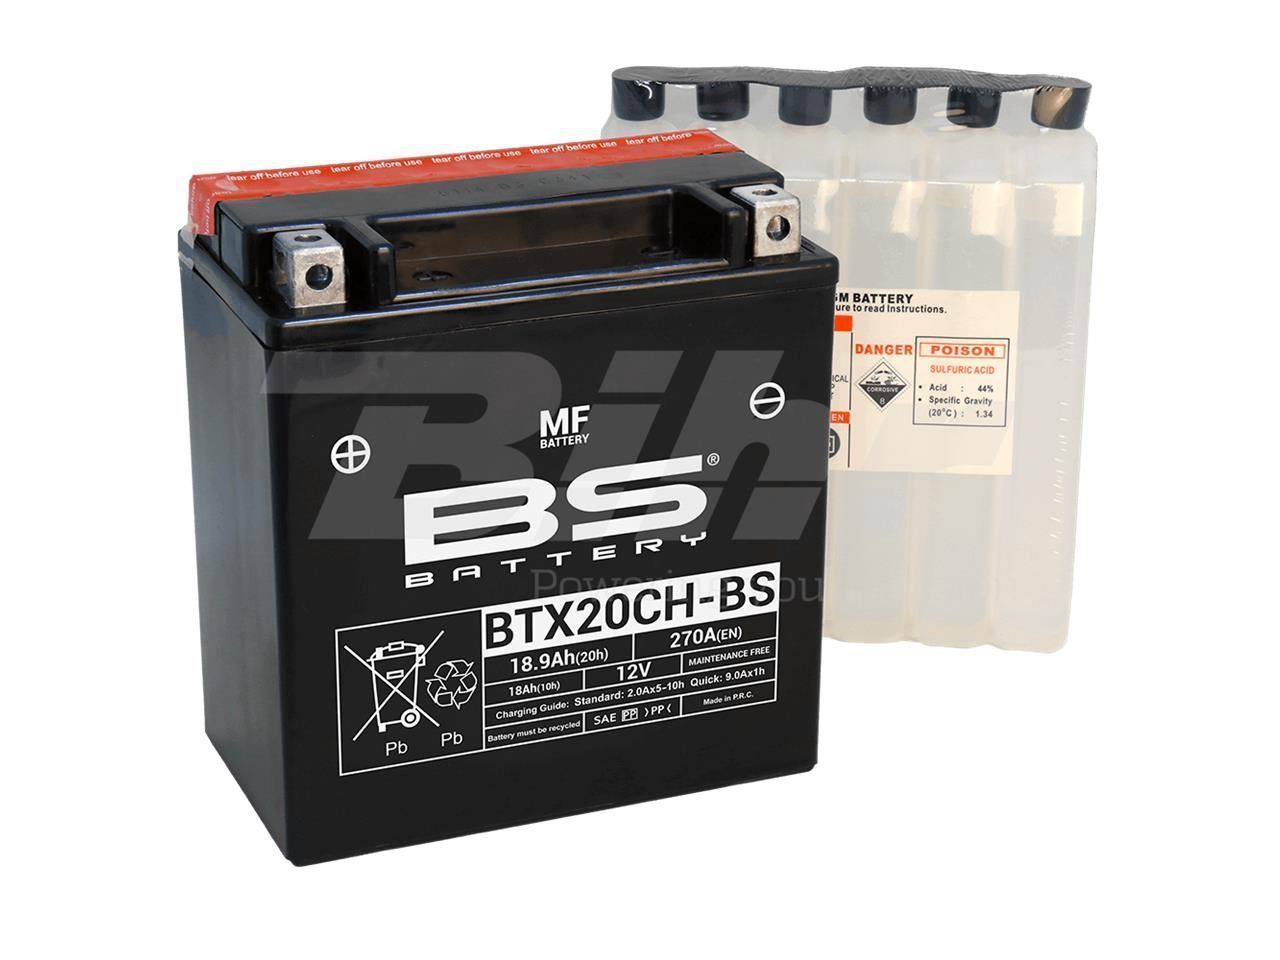 Bateria BS BTX20CH-BS - Imagen 1